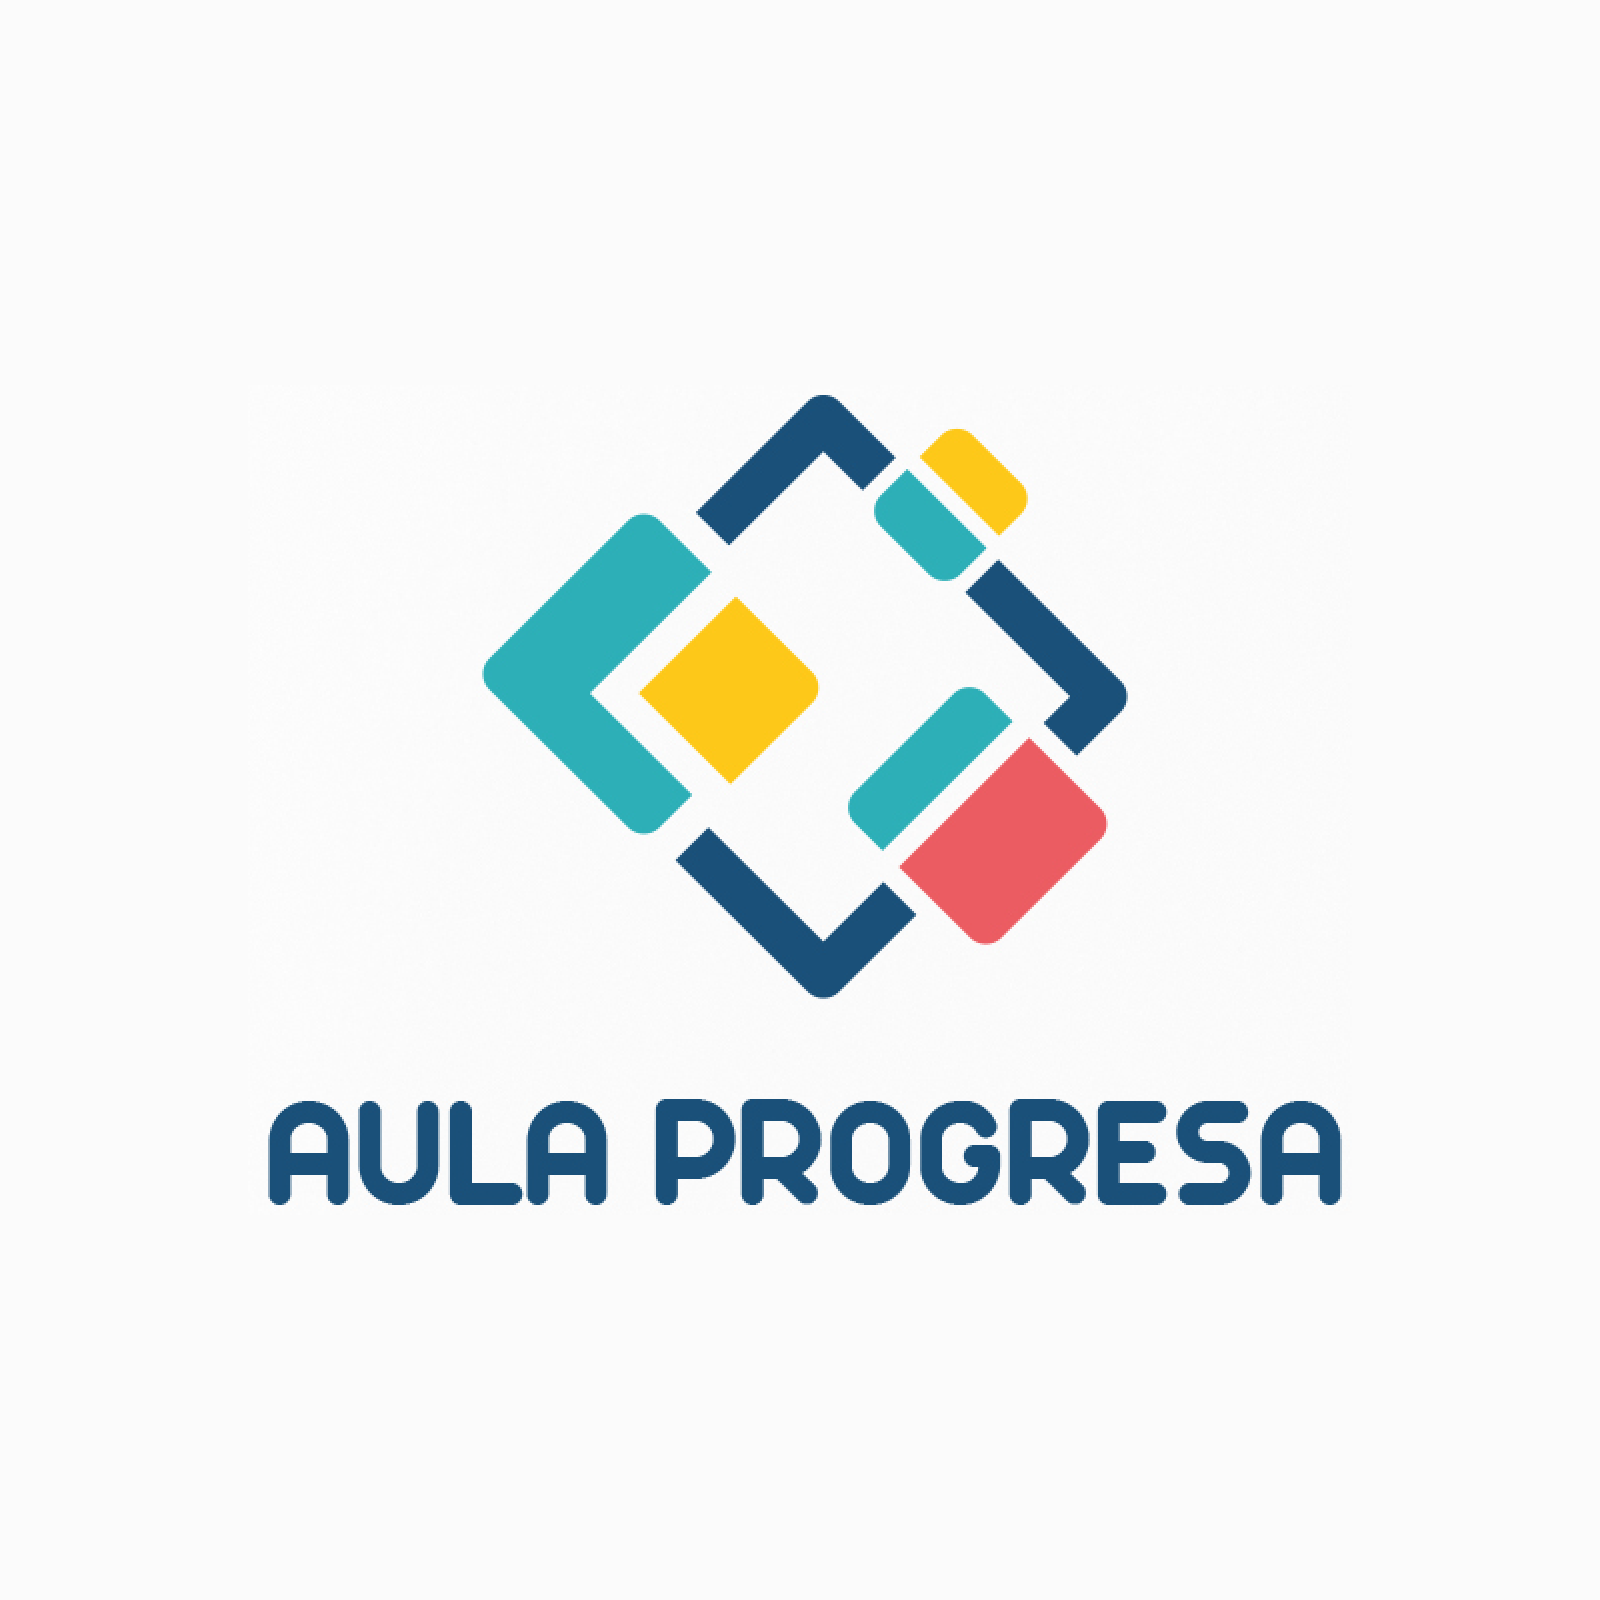 Diseño de logo y papeleria para Aula Progresa - Un trabajo de Silvia Calavera